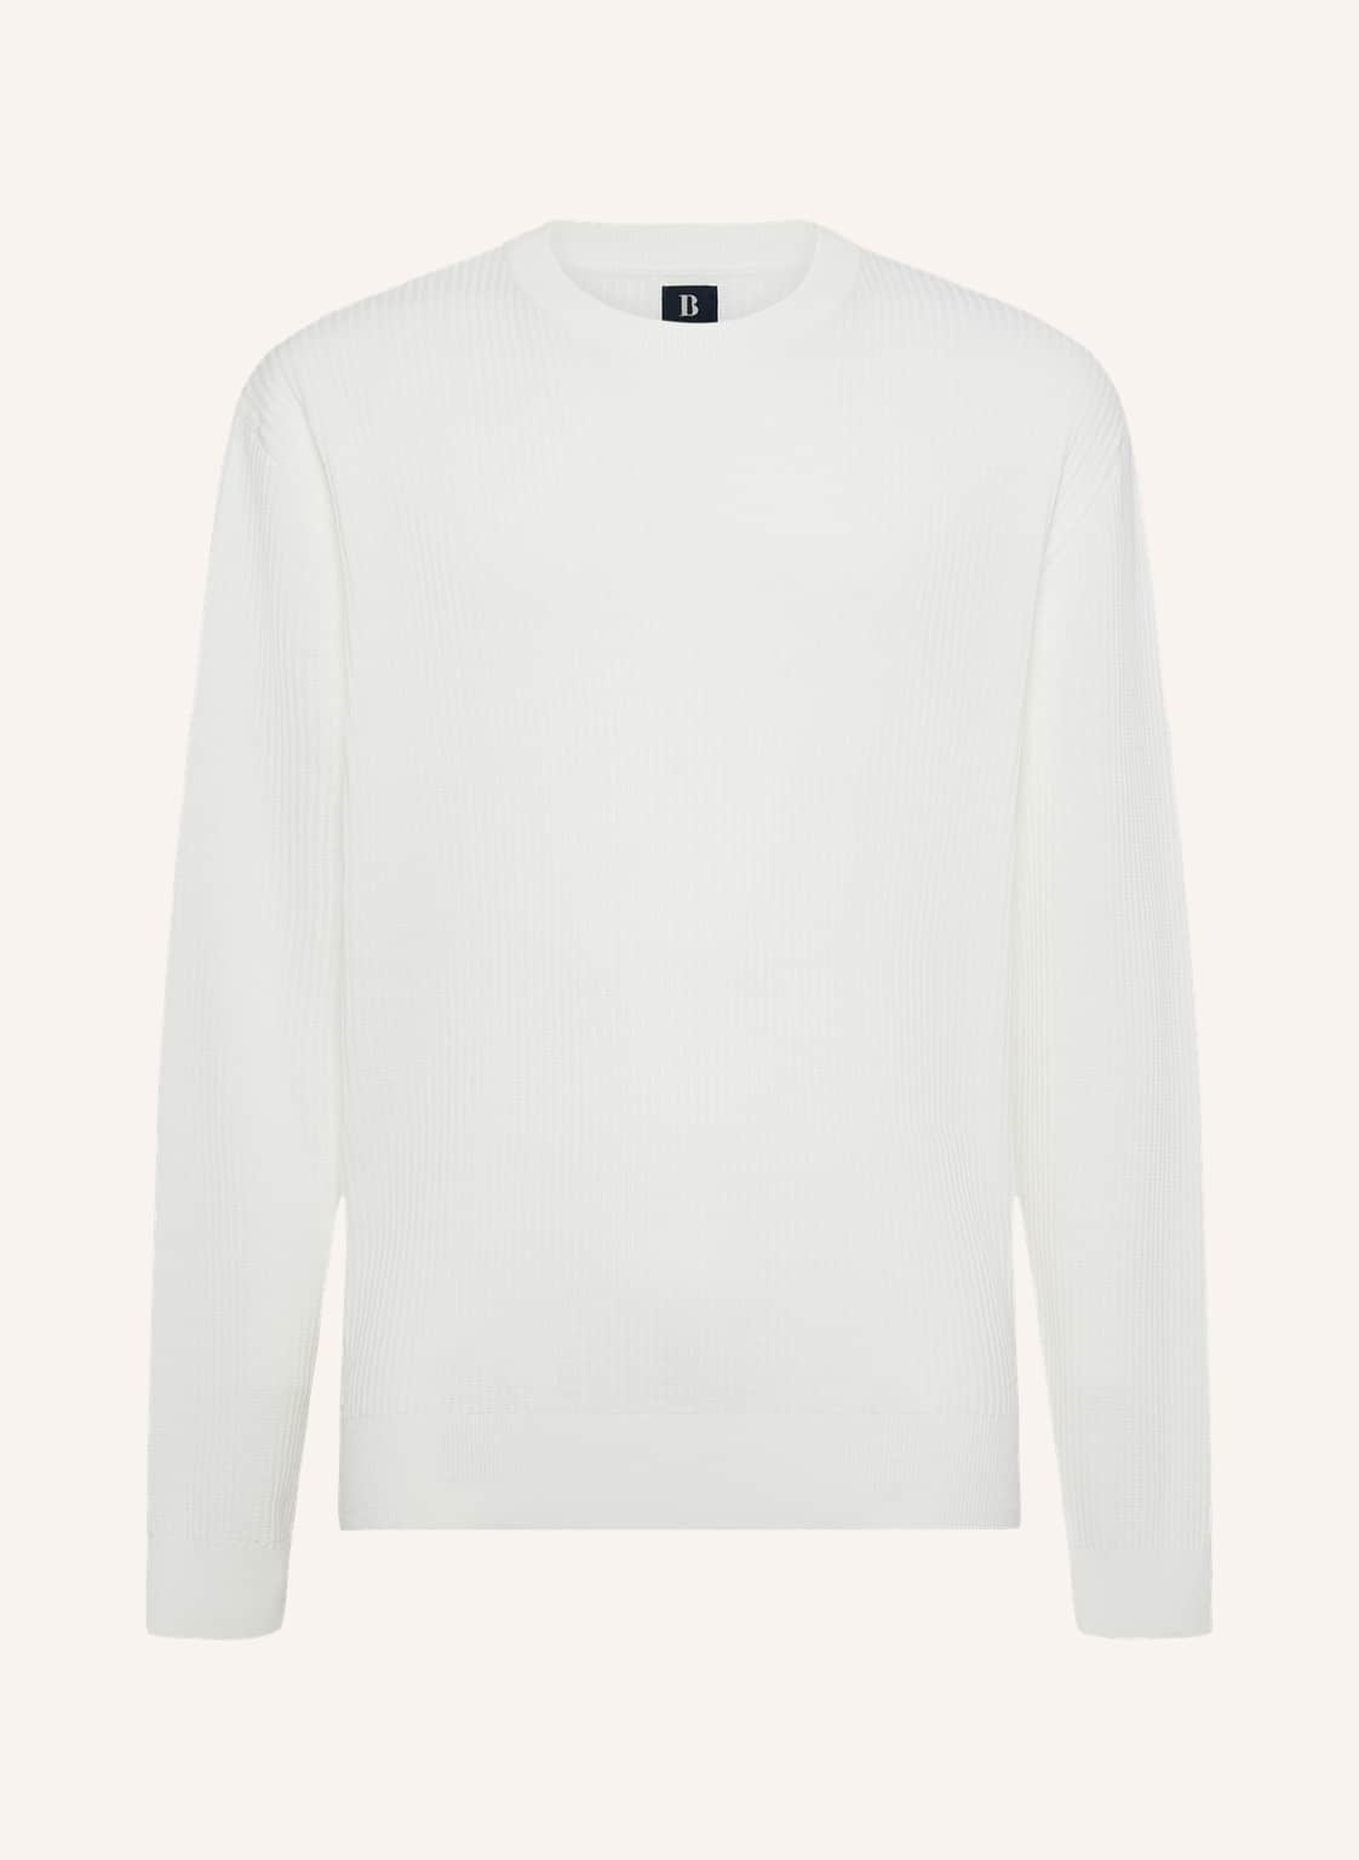 BOGGI MILANO Pullover, Farbe: WEISS (Bild 1)